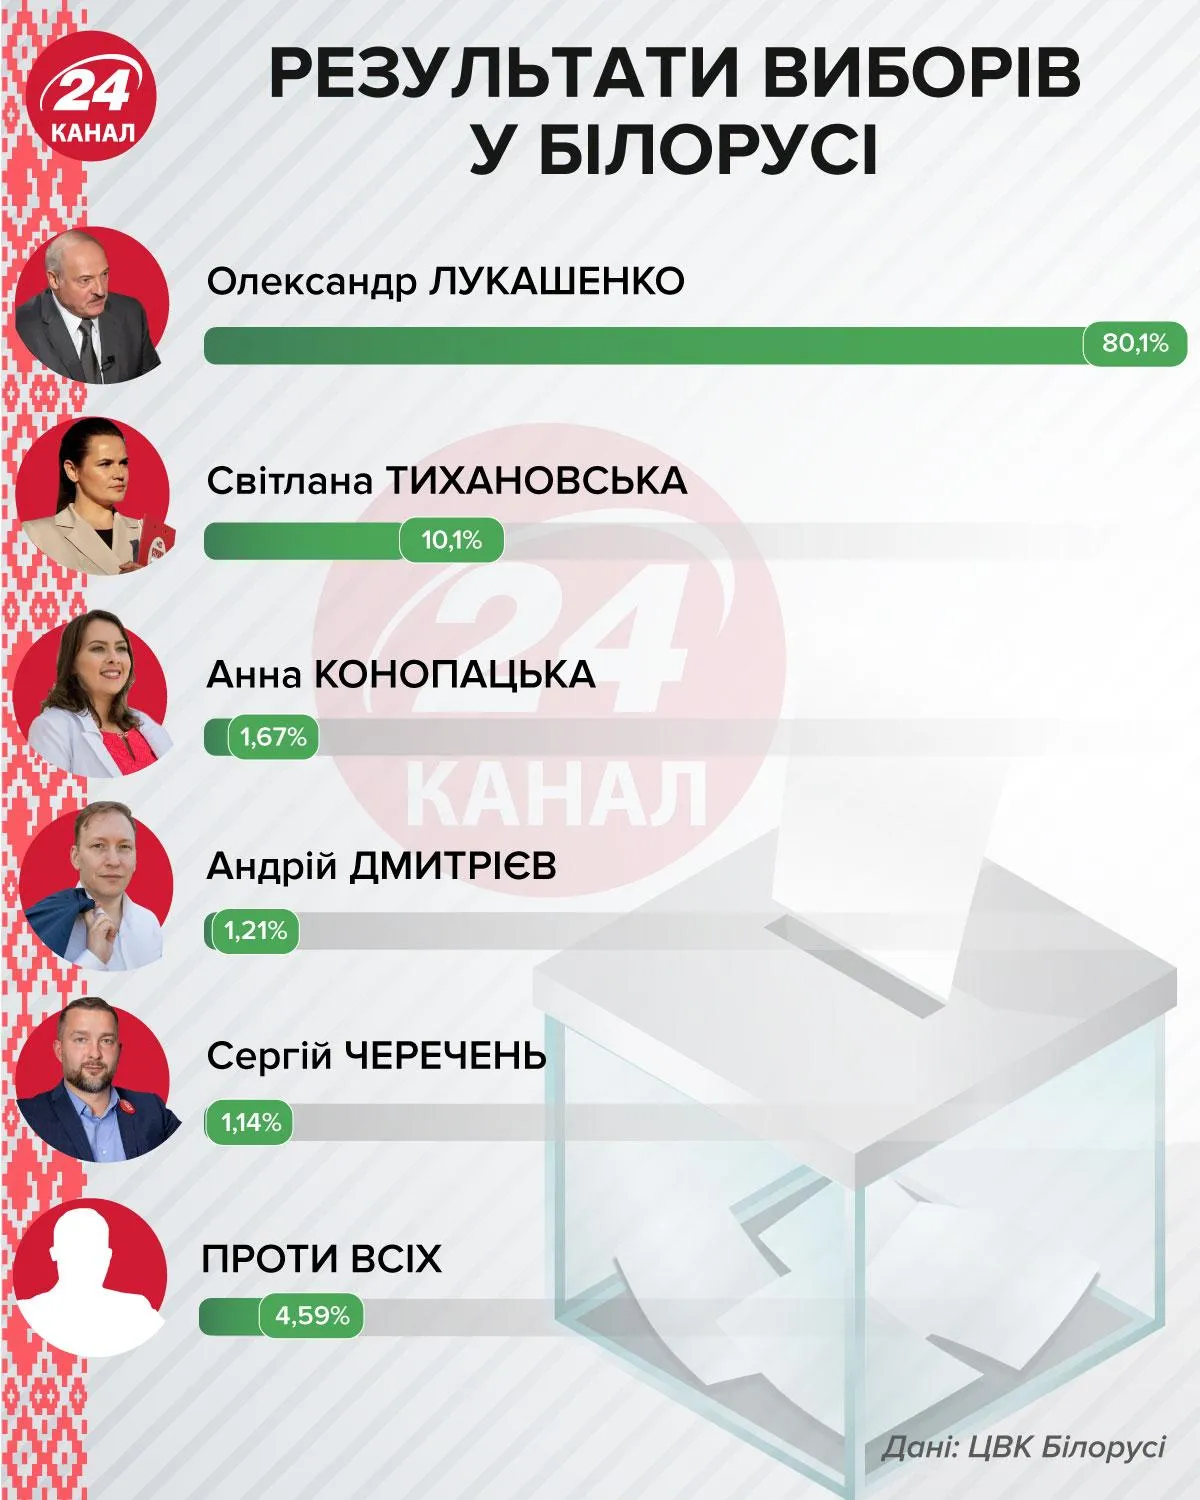 результати виборів у Білорусі